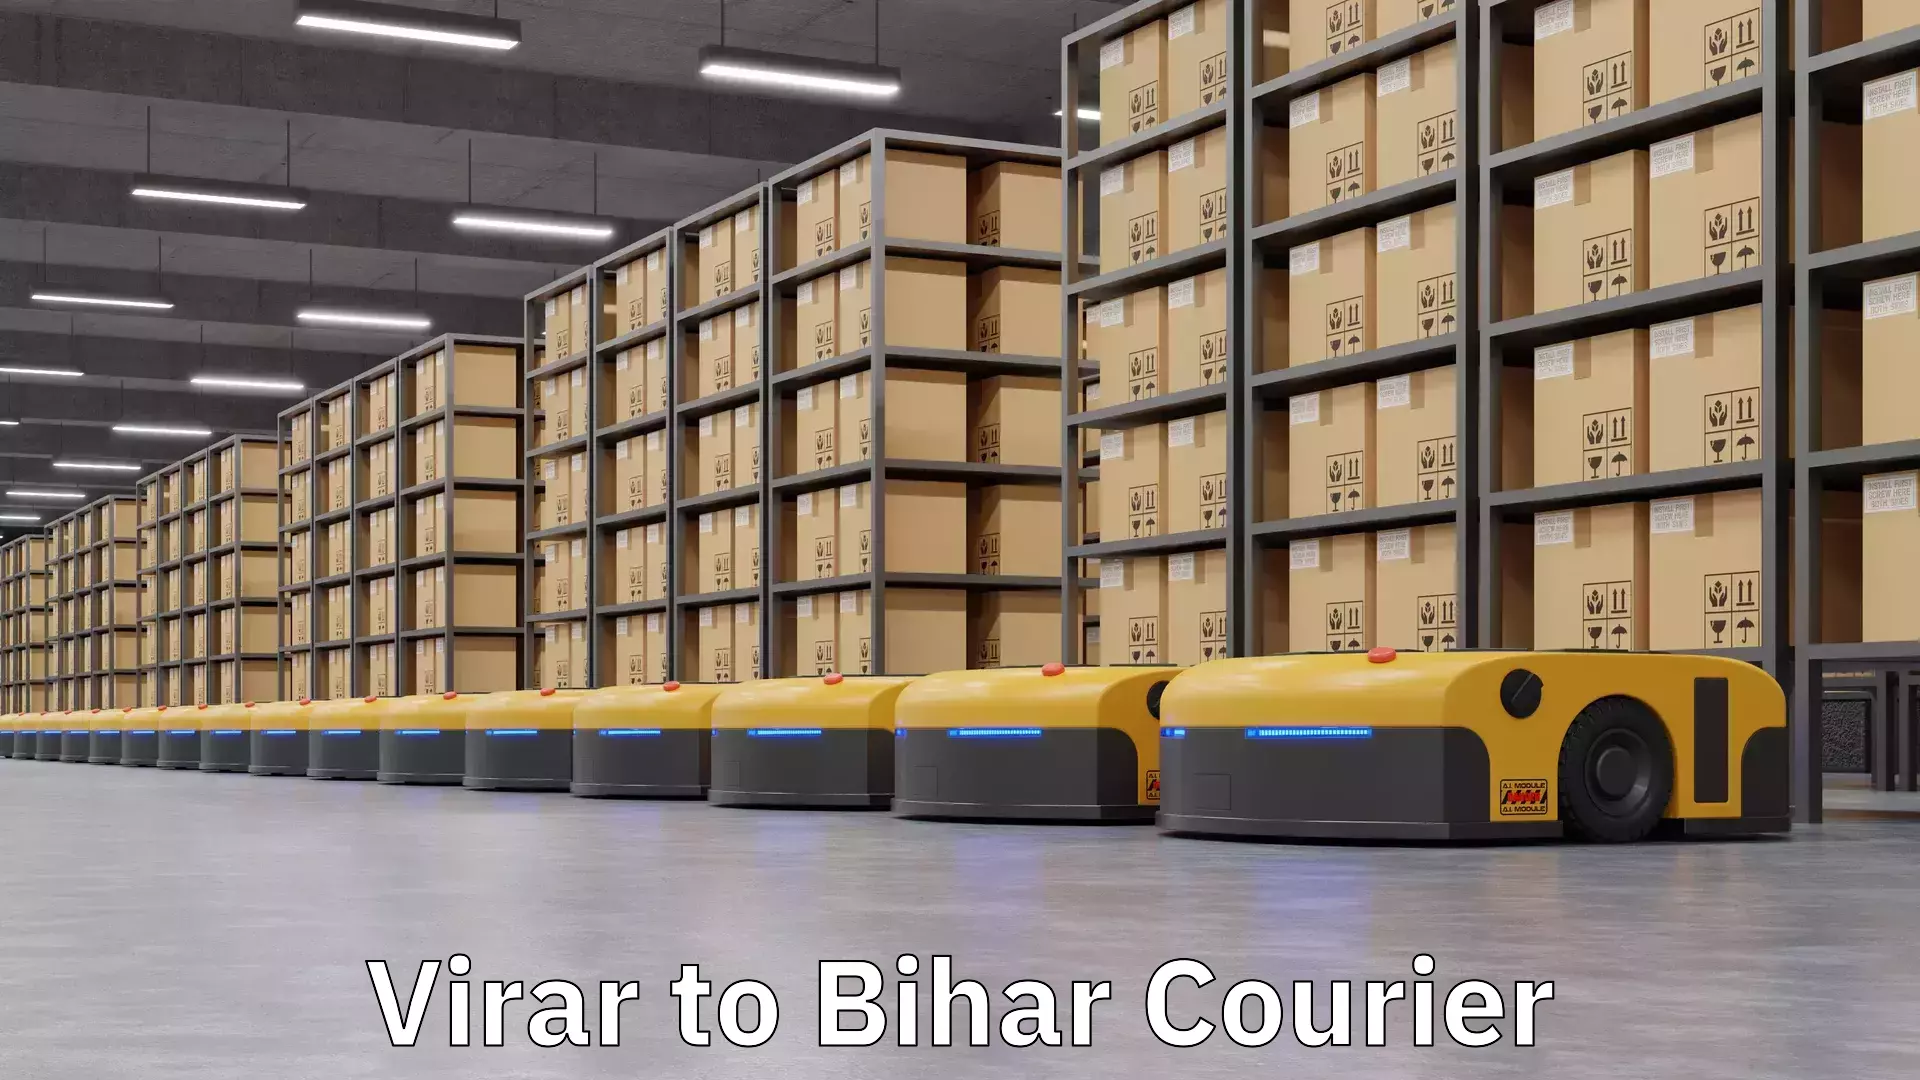 Modern courier technology Virar to Bihar